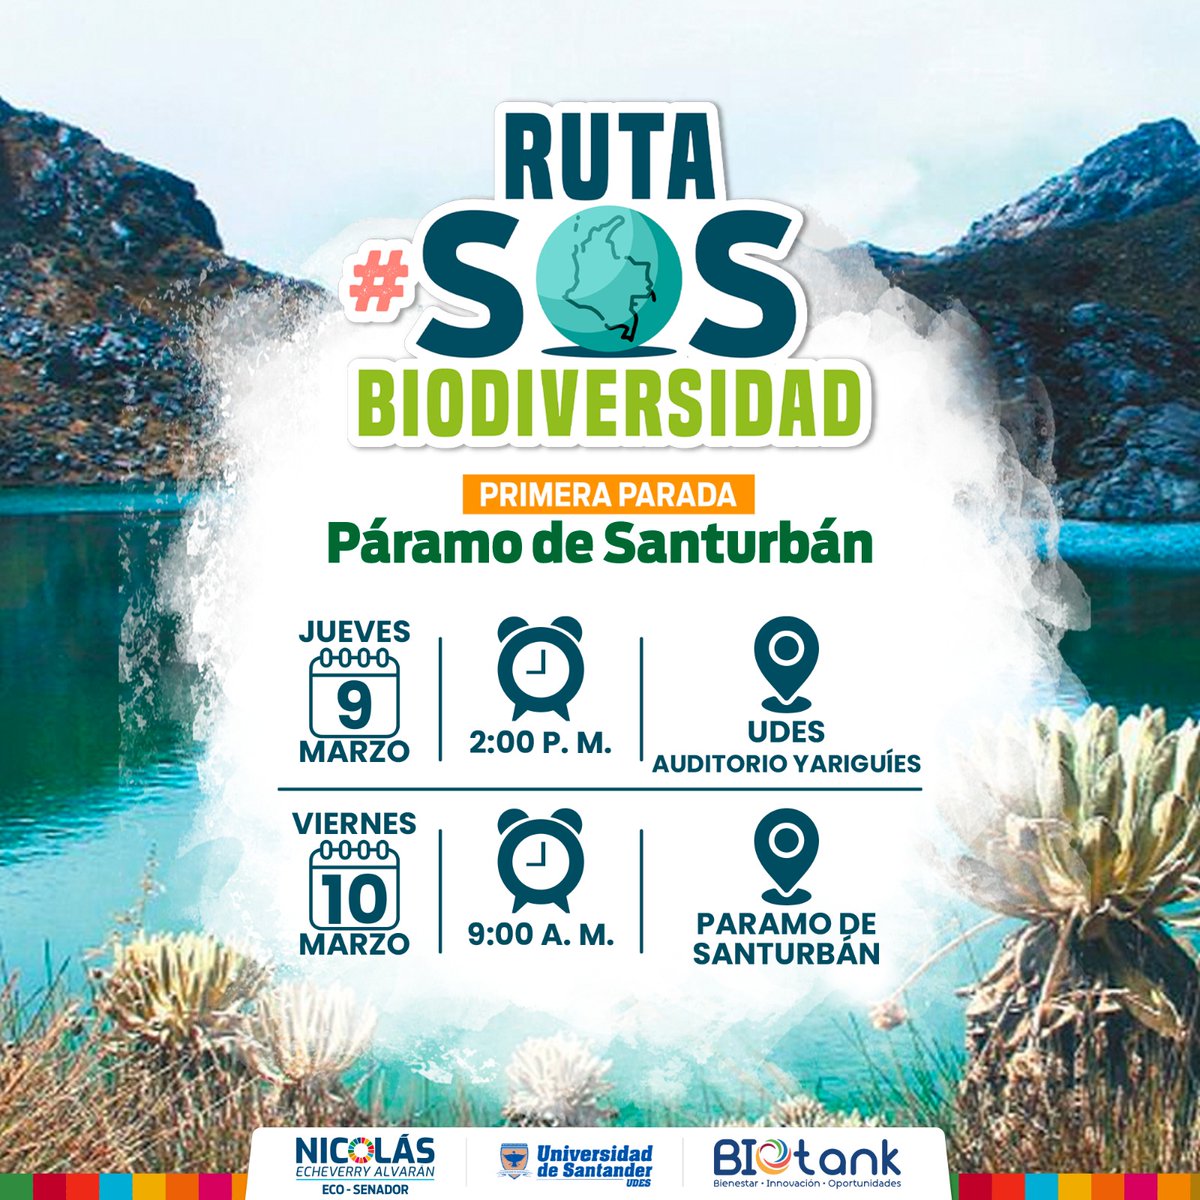 1️⃣♻️🌱 ¡El Páramo de San Turbán, primera parada de la Ruta #SOSBiodiversidad!💧🌳🏔️

Los próximos jueves y viernes, 9 y 10 de marzo, llevaremos a cabo nuestro primer diálogo social con actores interesados en tomar acciones para detener la pérdida de la biodiversidad en Colombia.